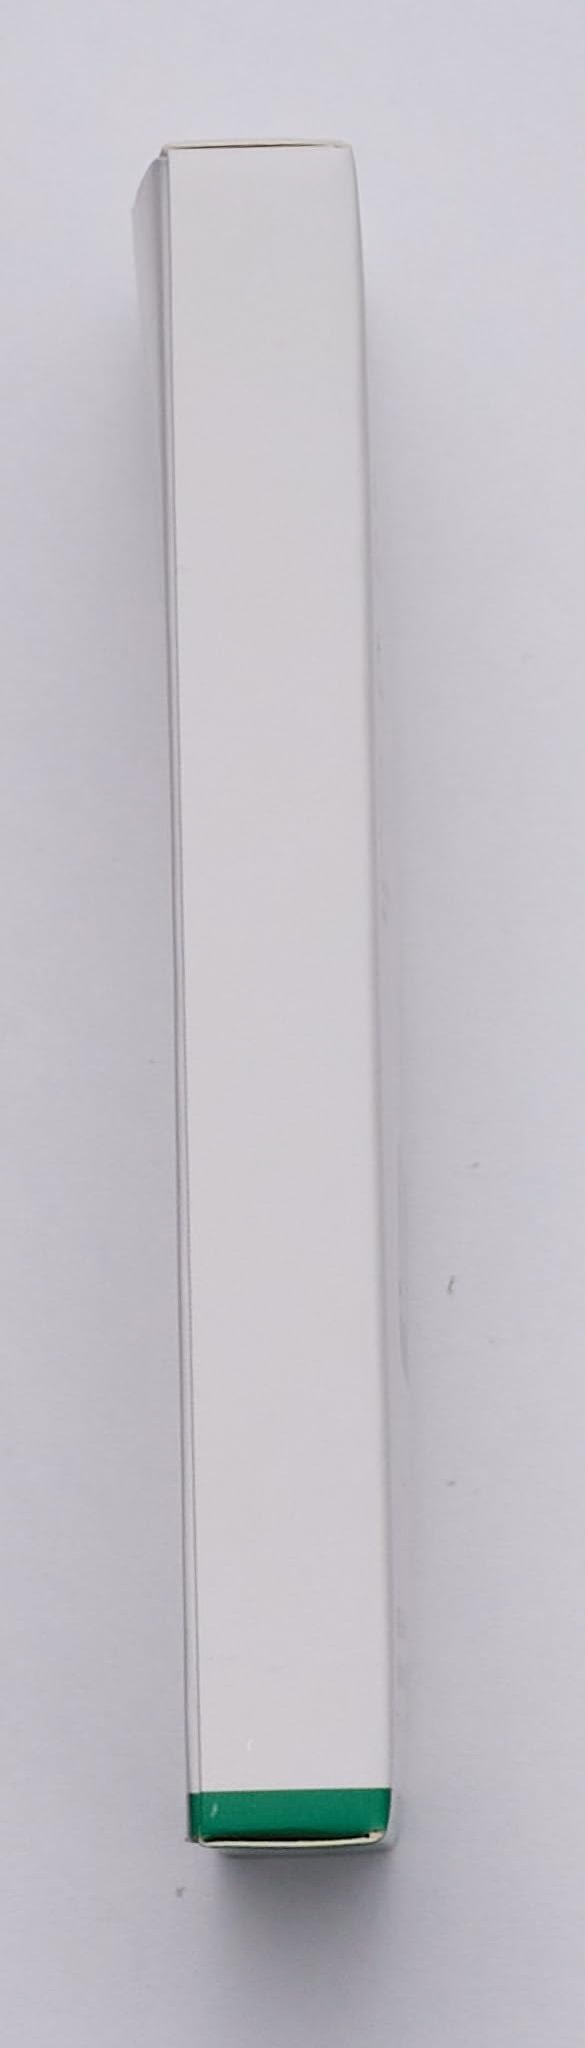 UGREEN Hoofdtelefoon Adapter USB C PD en QC Charger 2 in 1 USB C Splitter Type C naar 3.5mm Audio Converter